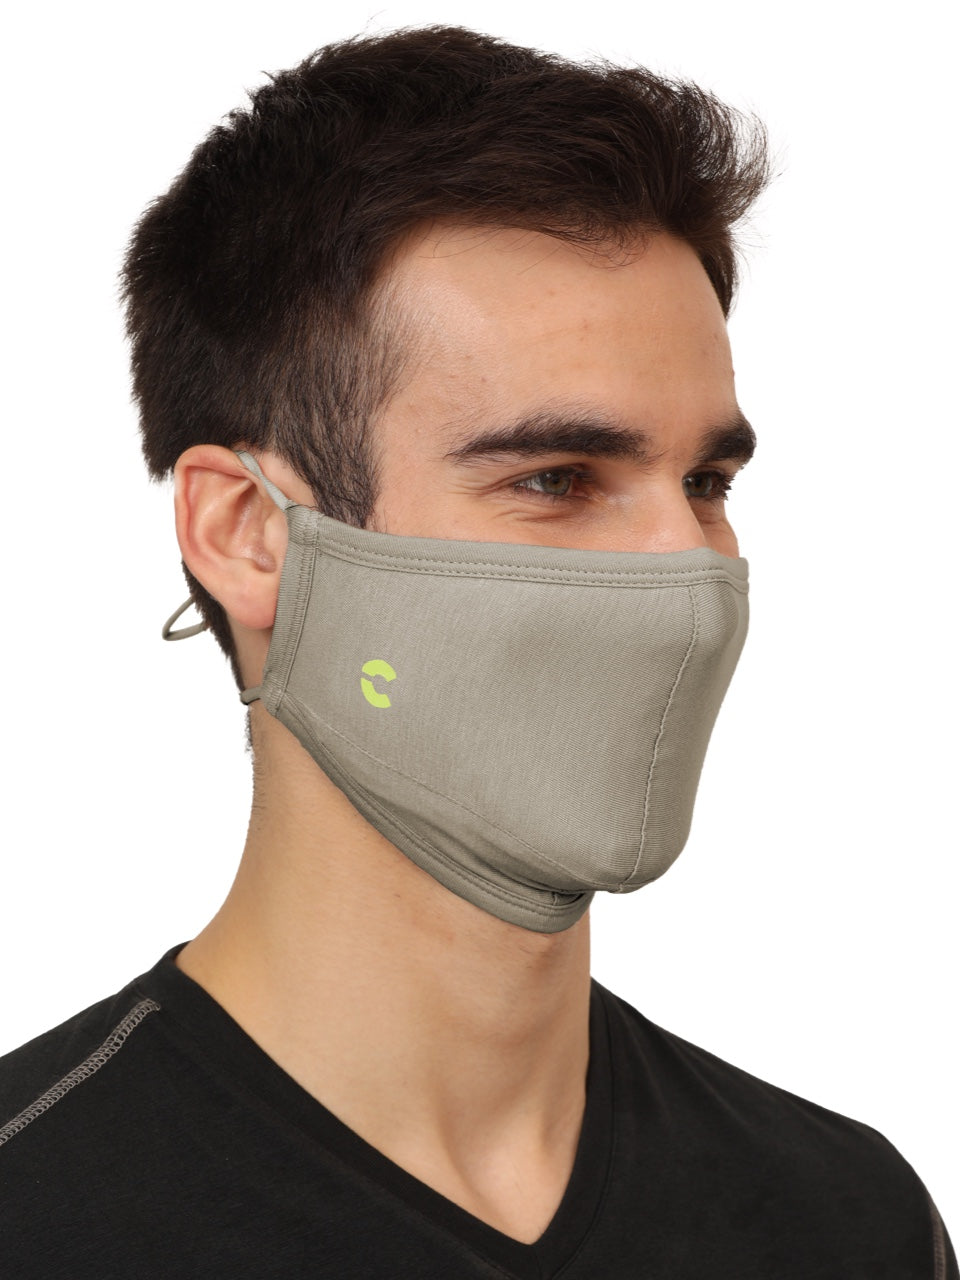 BreathePro Head Bound Masks (Fashion)  - Pack of 3